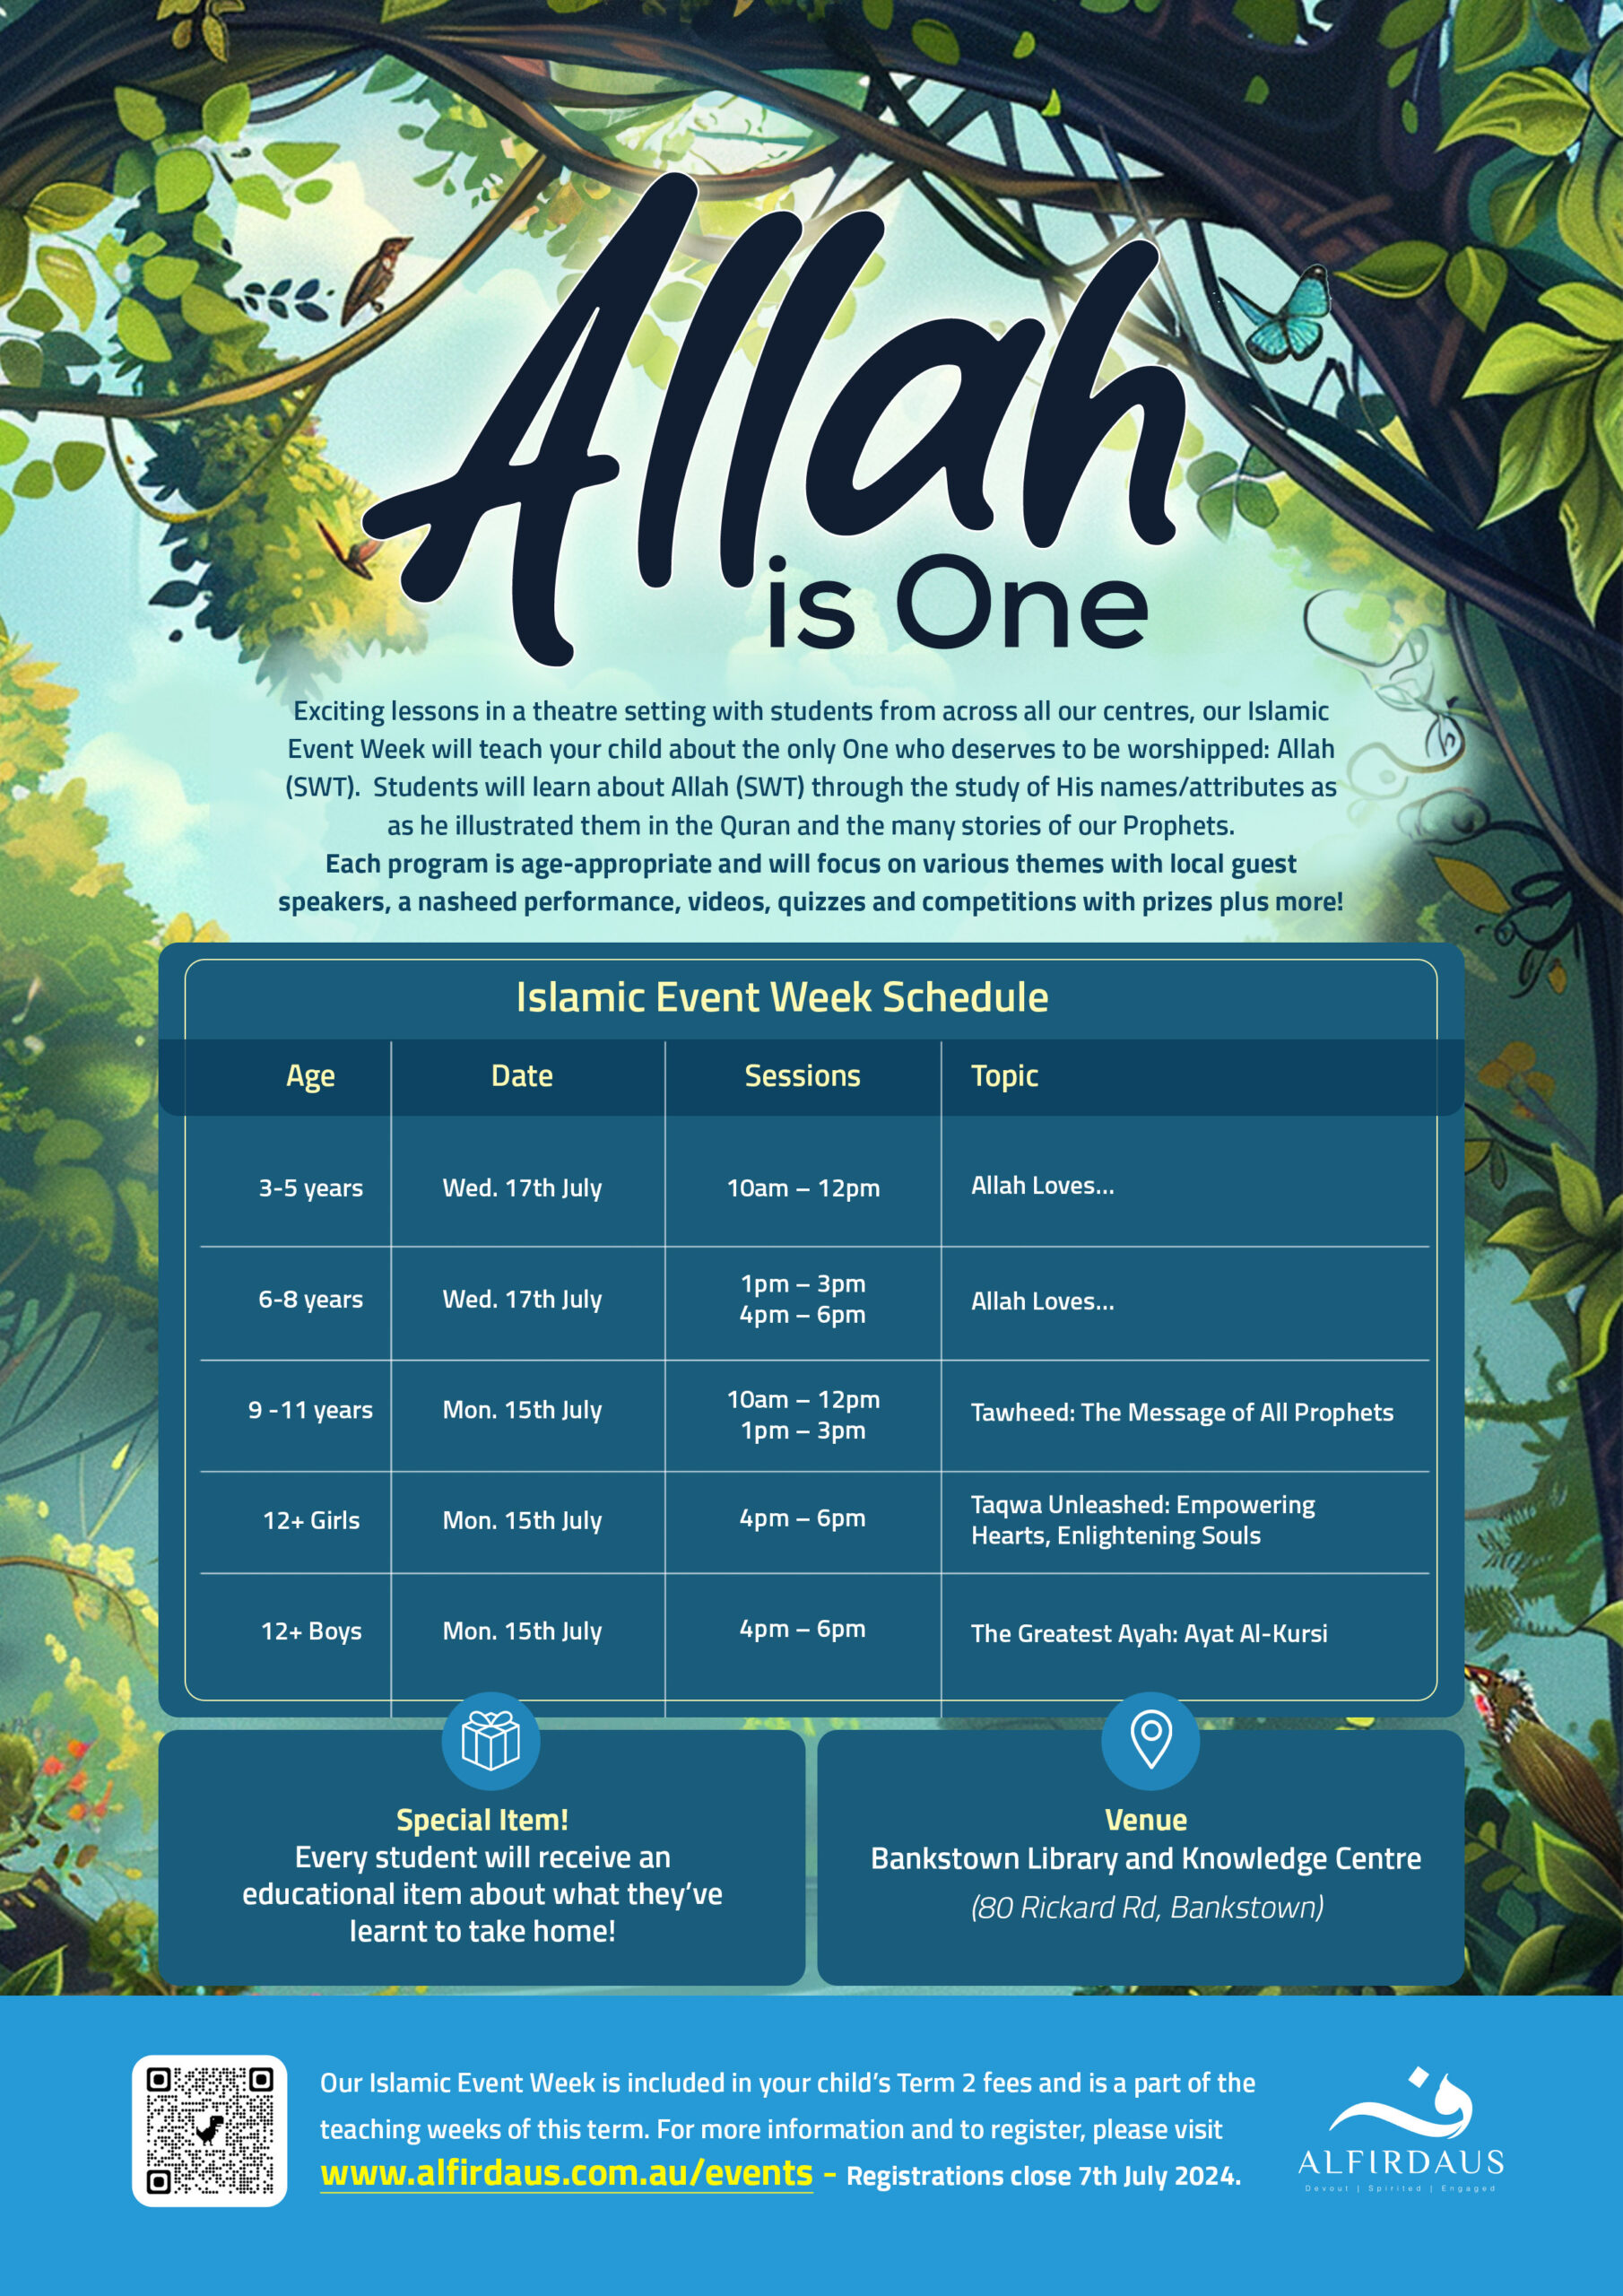 Islamic Event Week